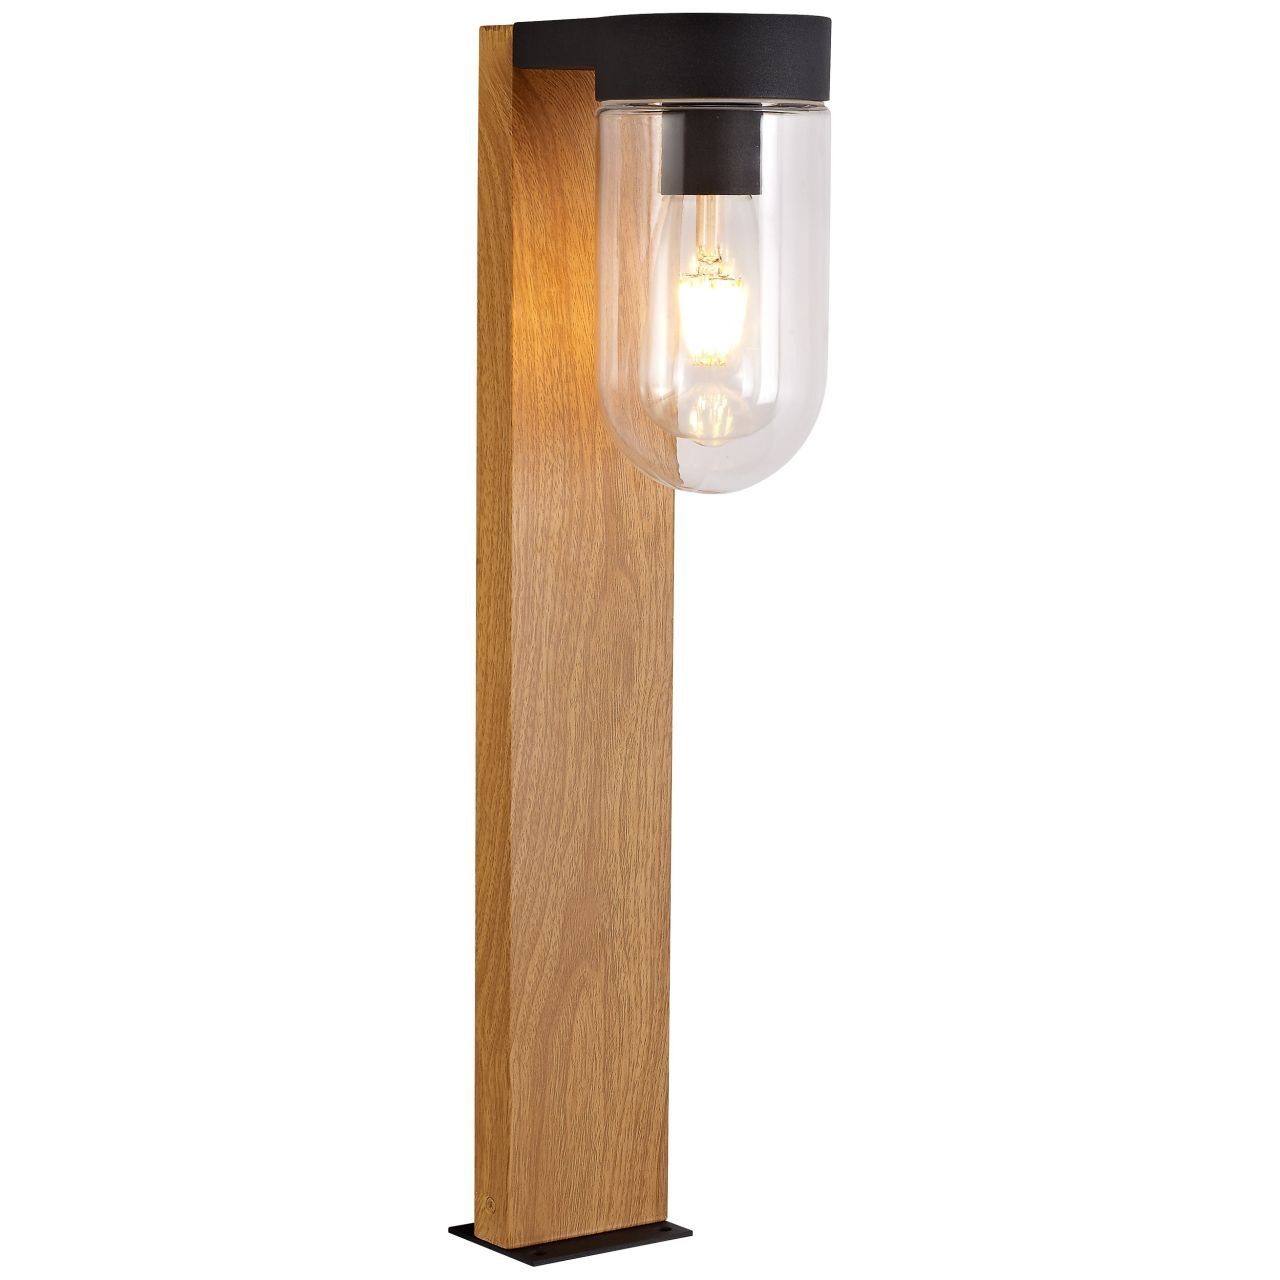 Brilliant Außen-Stehlampe A60, E27 Cabar, 1x Cabar Außensockelleuchte Lampe dunkel/schwarz holz 55cm